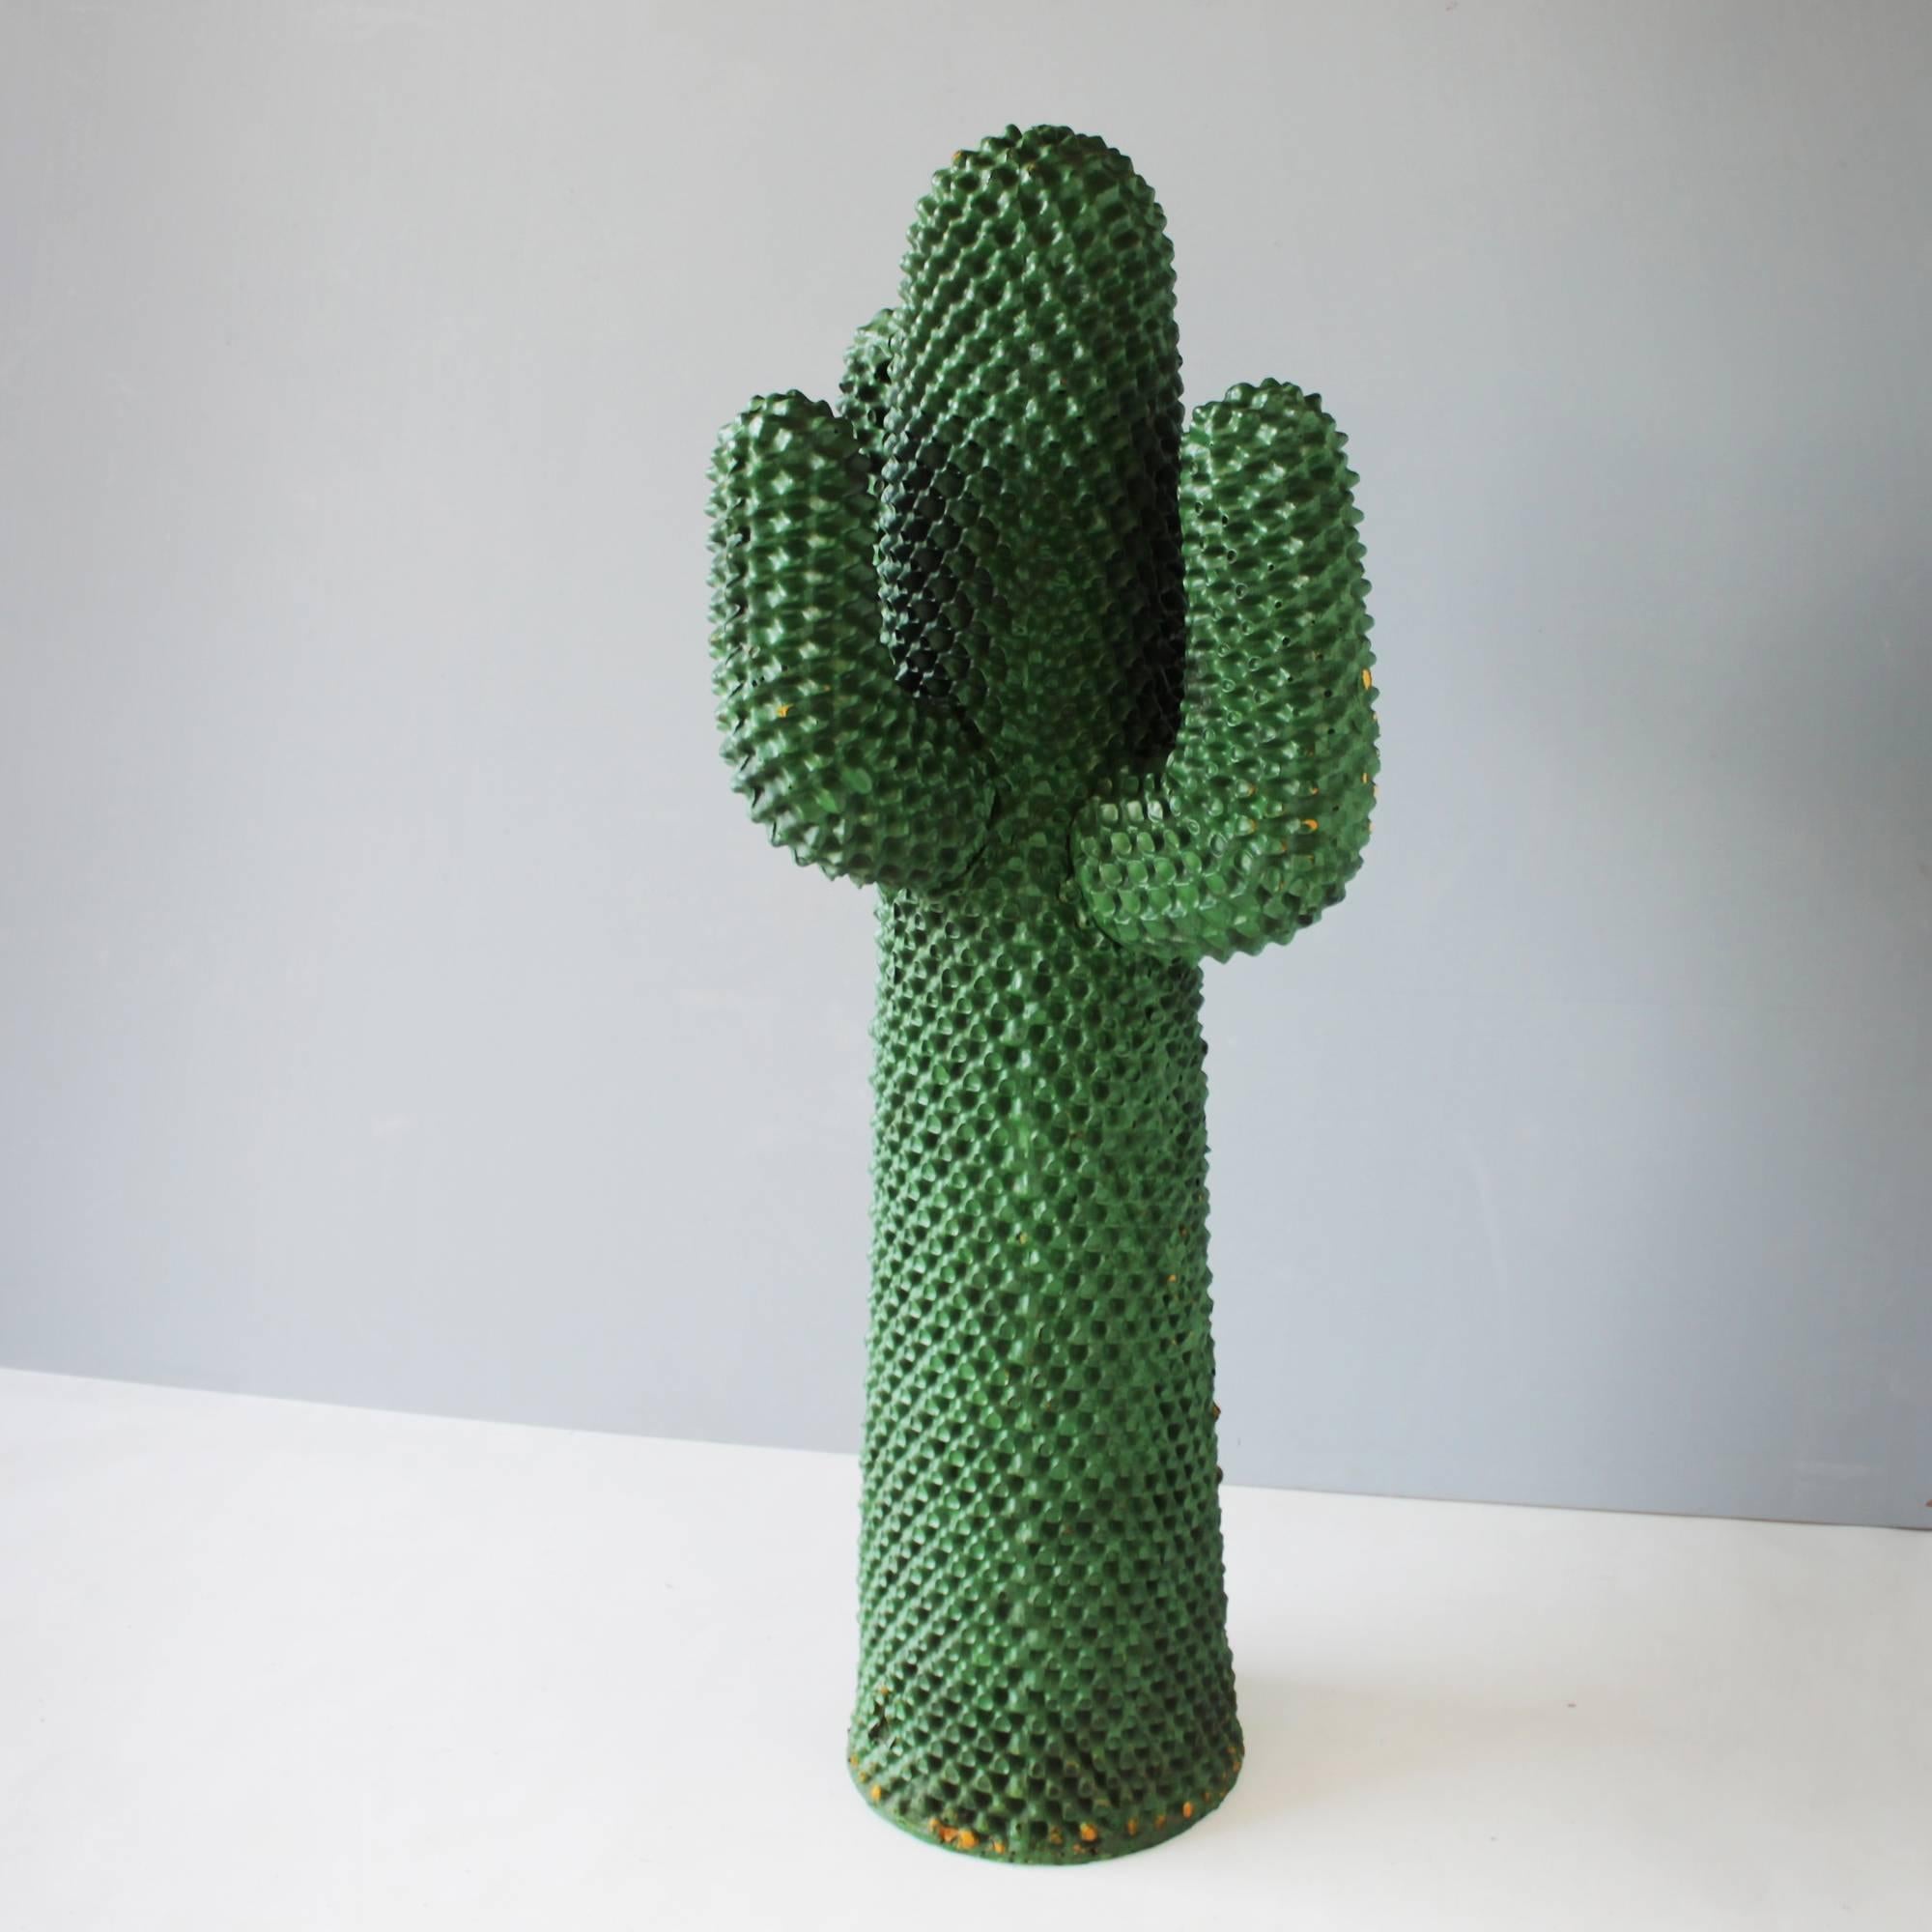 guido drocco cactus